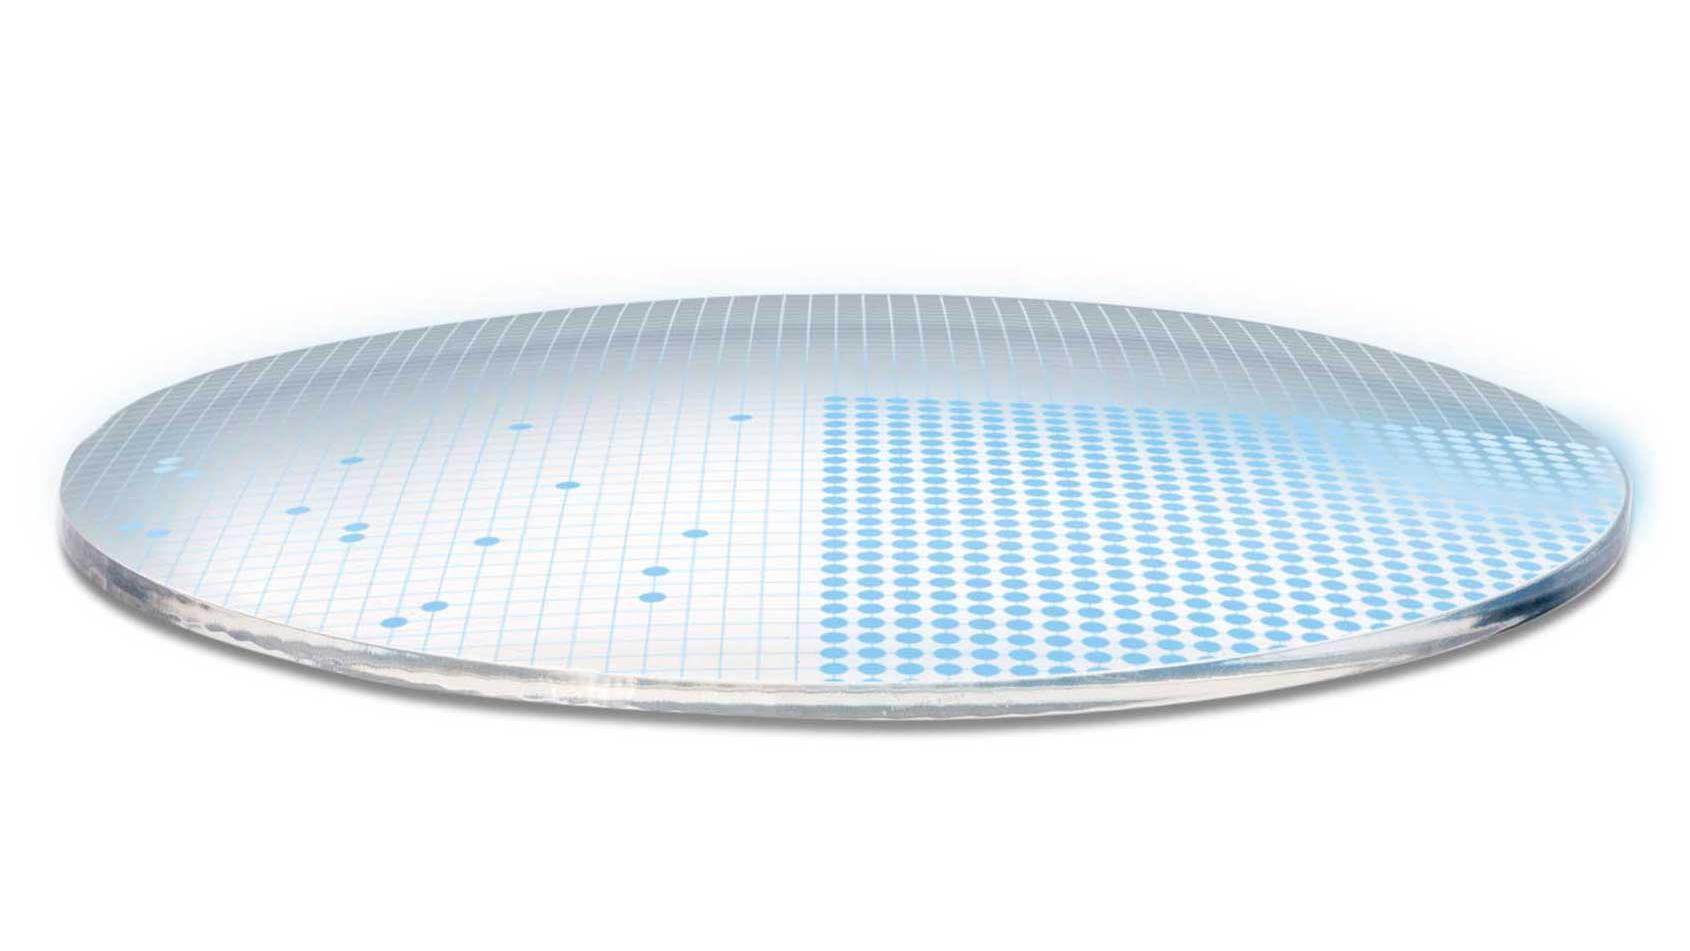 3D-illustrasjon av glass som viser 700 blå prikker som symboliserer 700 frie parametere for en svært kompleks glassoverflate.